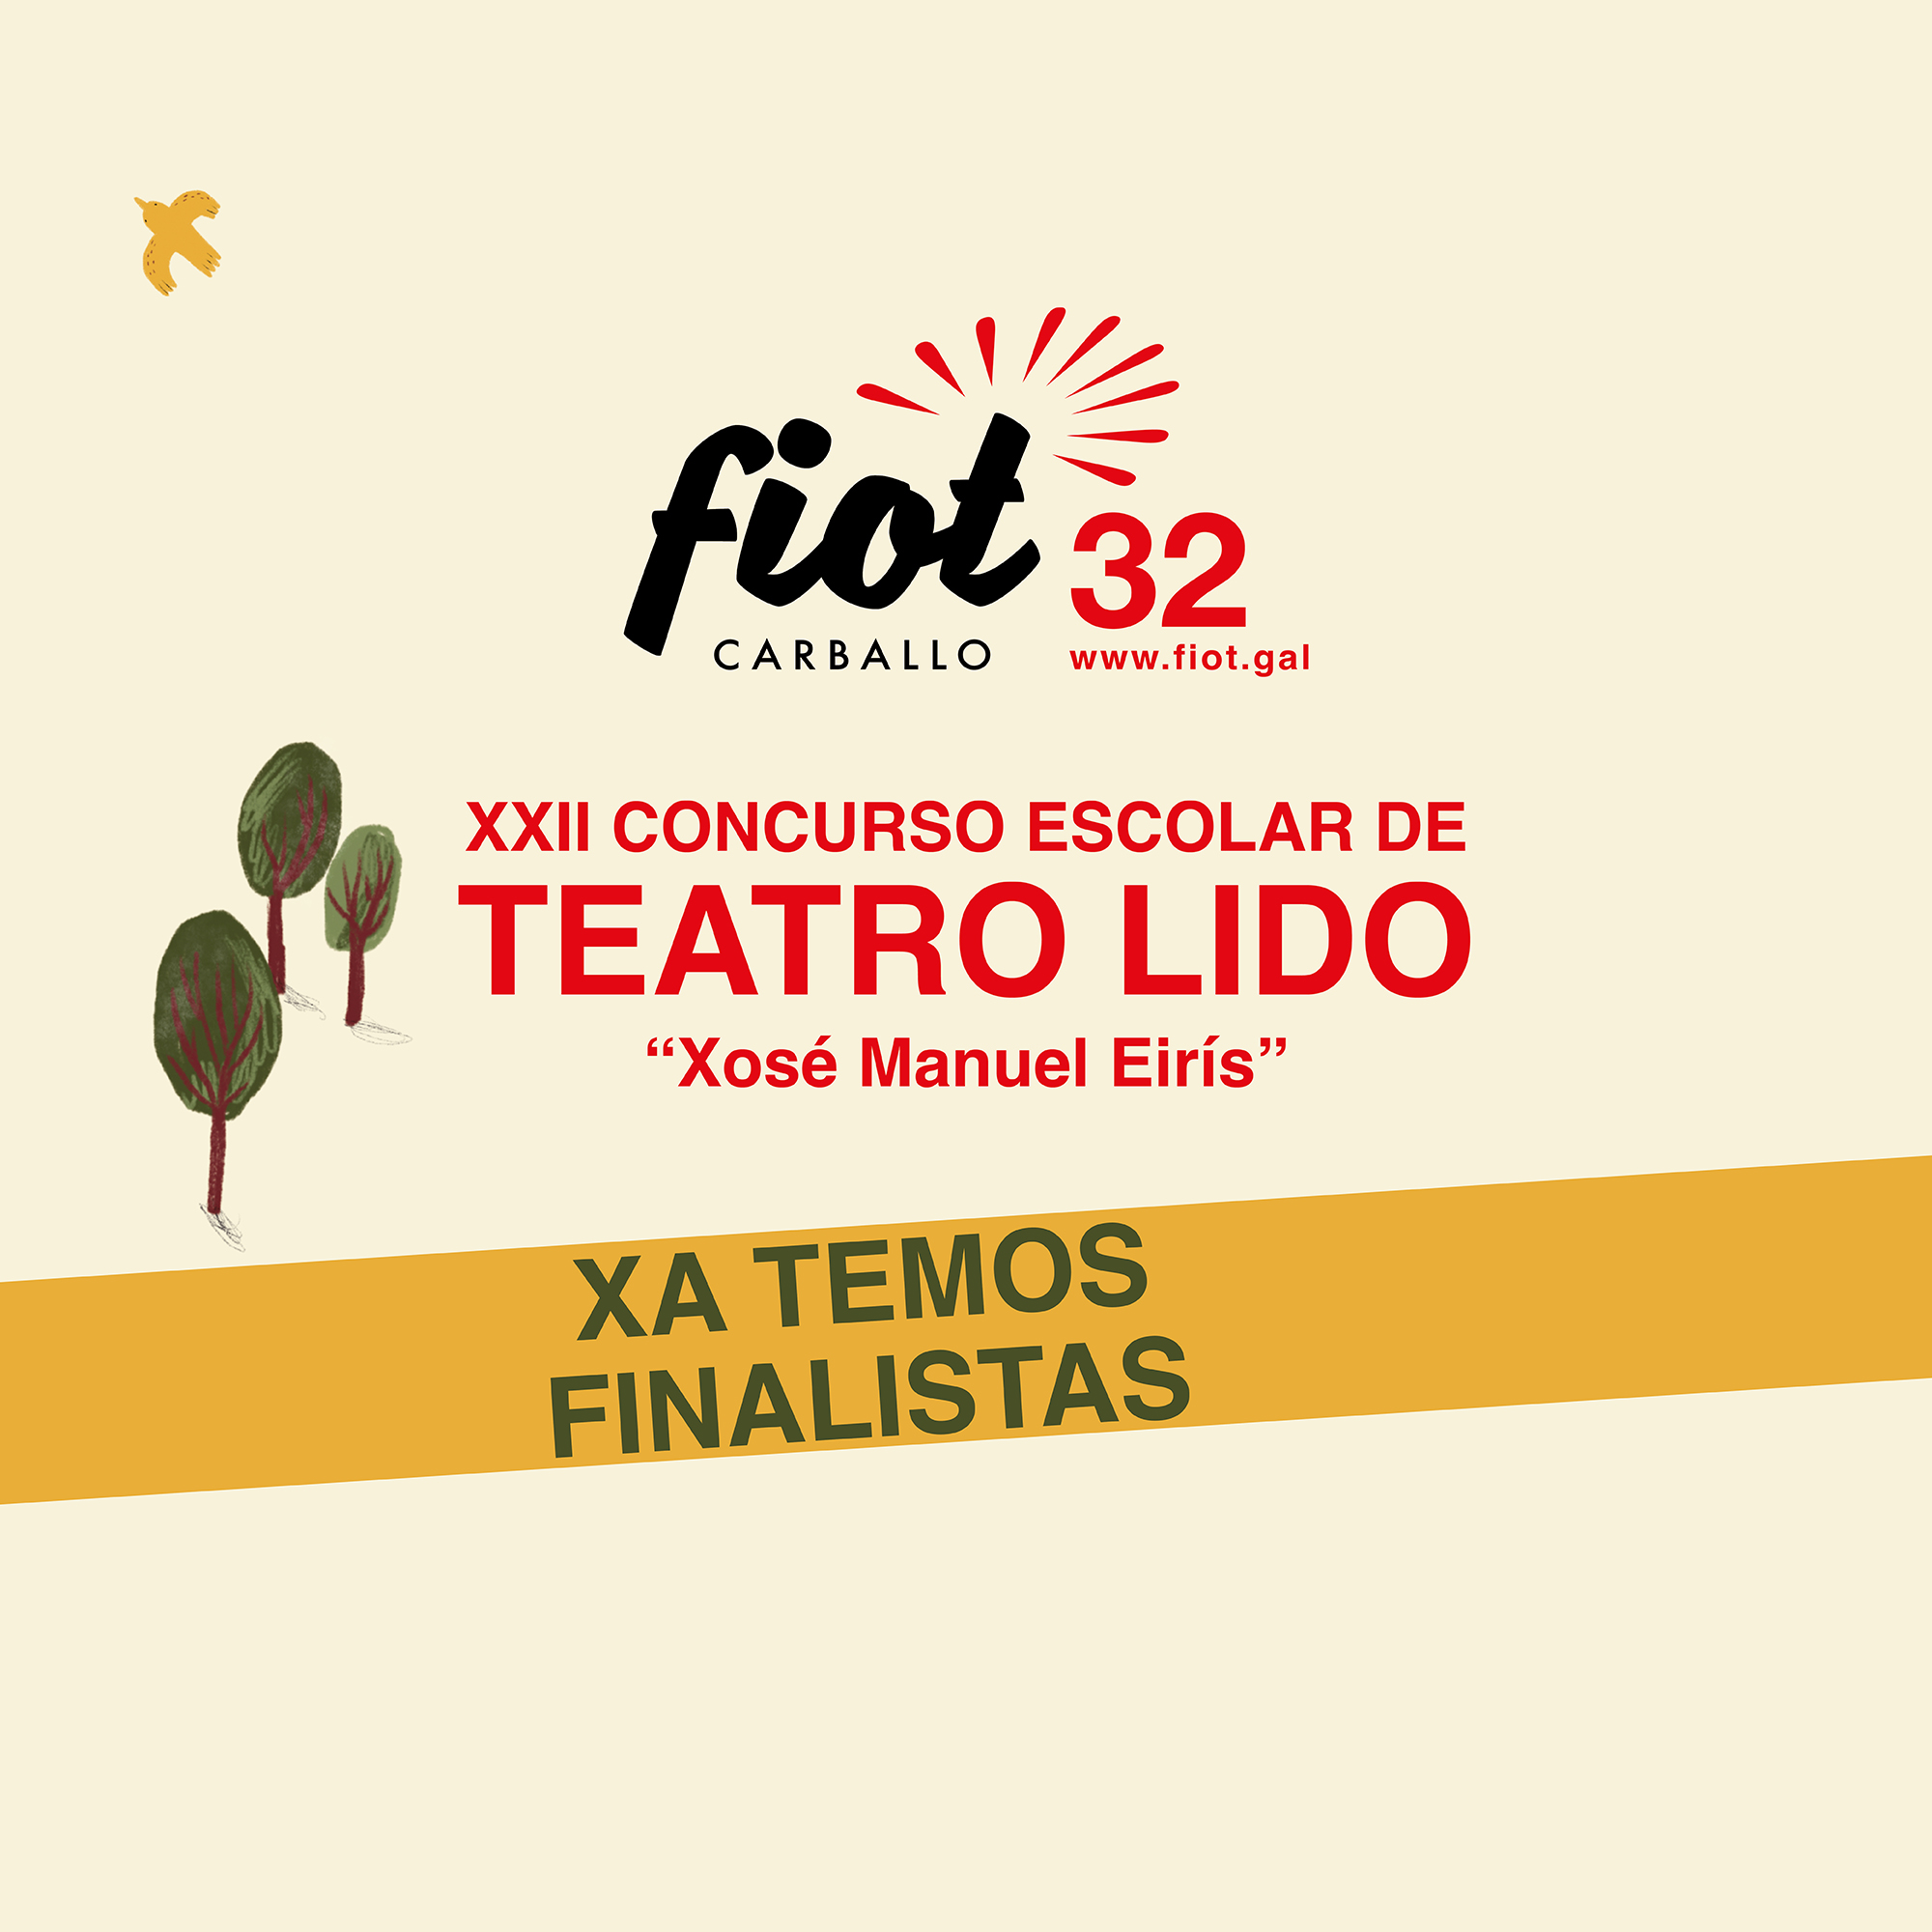 Finalistas do XXII Concurso Escolar de Teatro Lido Xosé Manuel Eirís